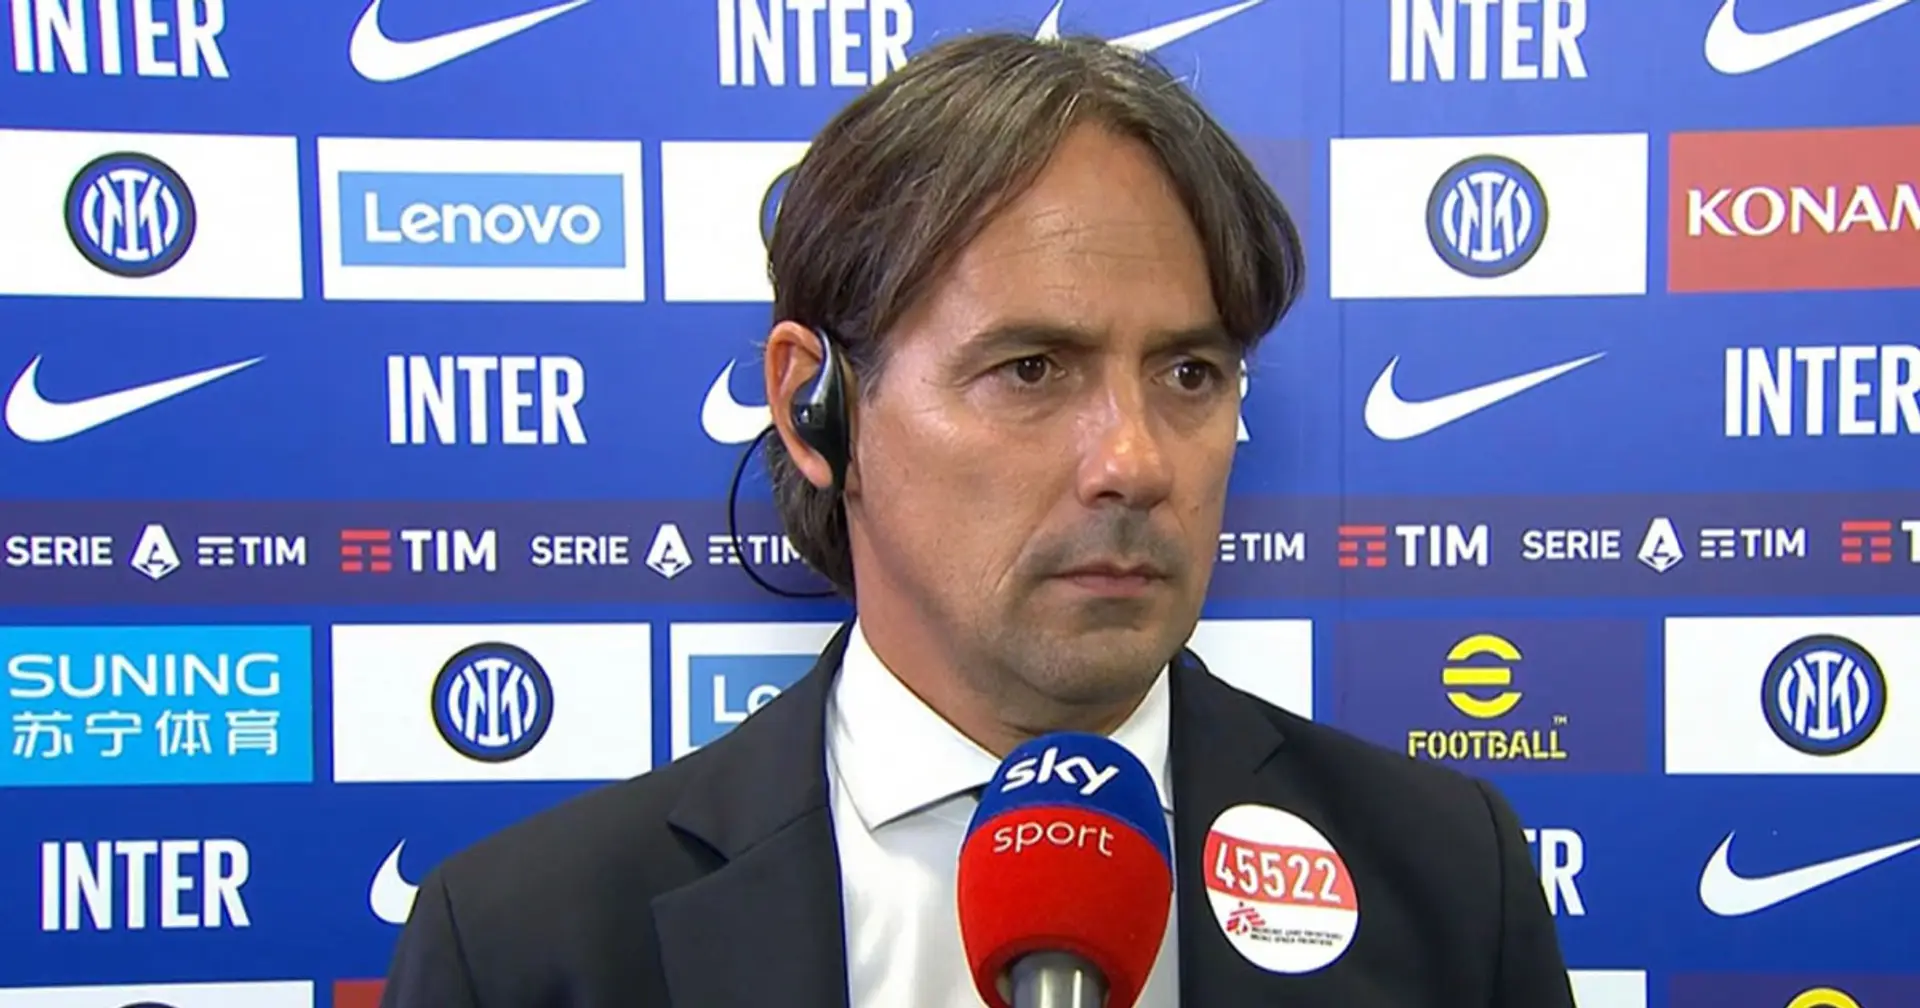 Inzaghi rivela quale gara gli è rimasta più impressa sulla panchina dell'Inter